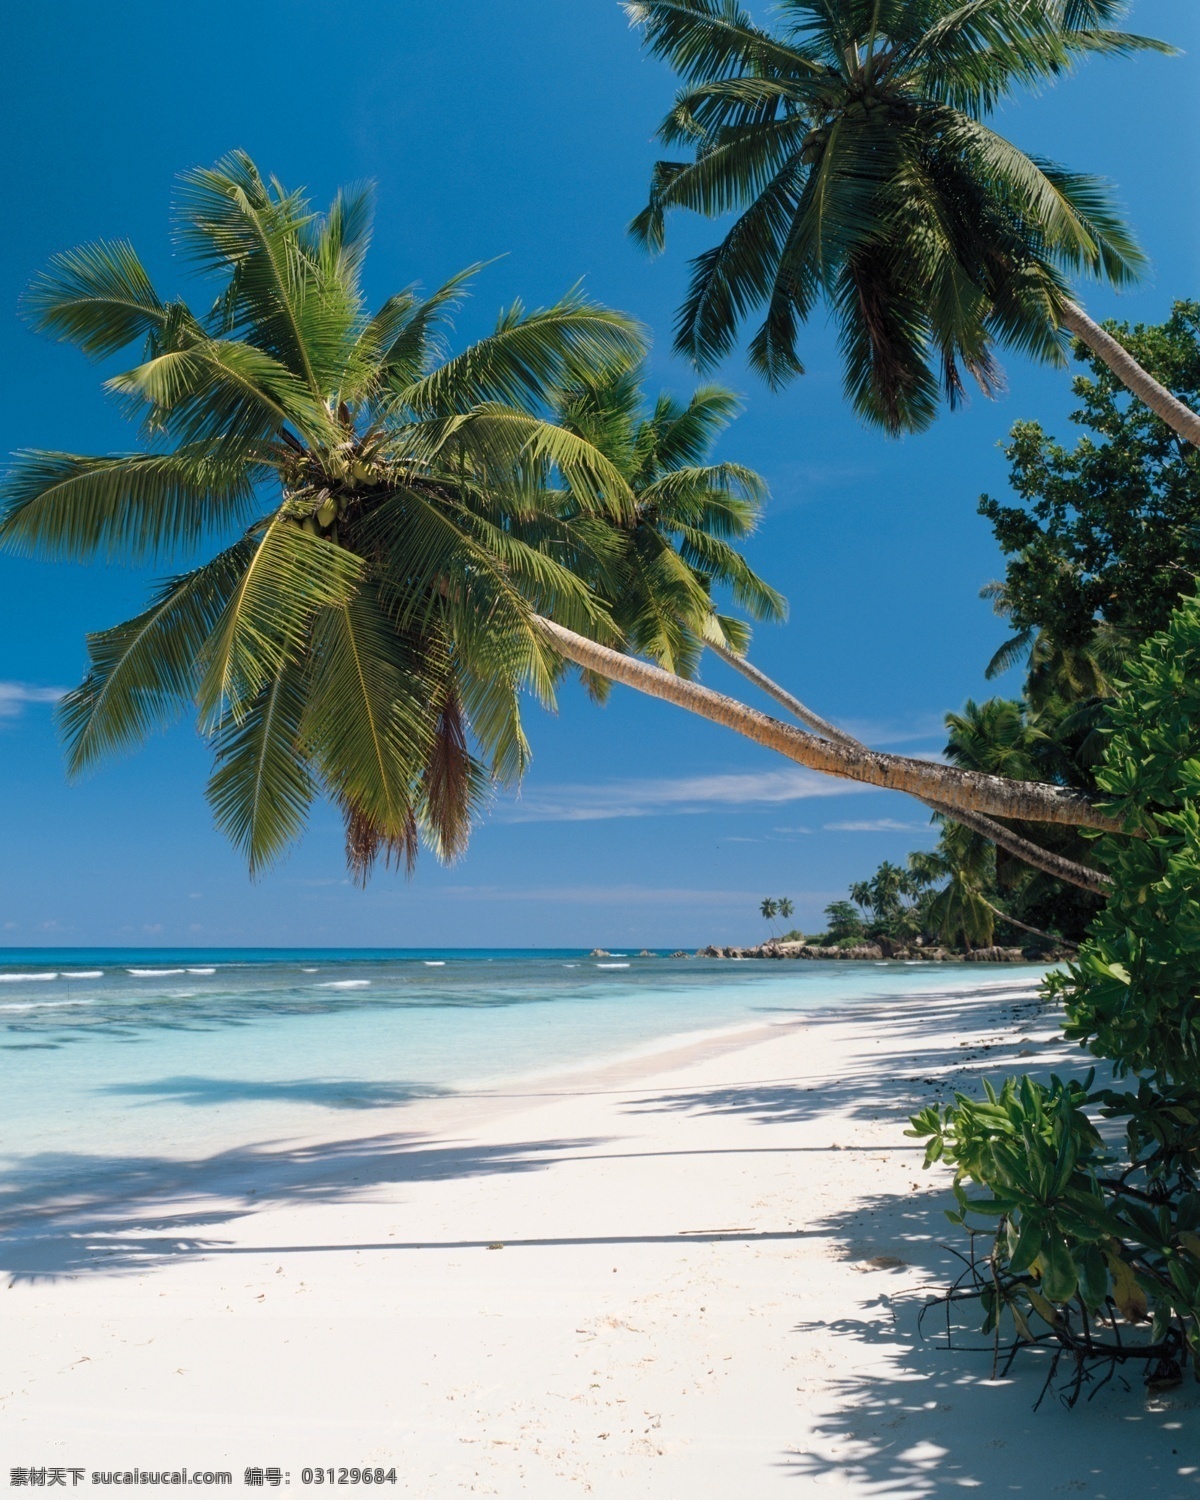 海滩风光 白云 大海 海景 海滩 蓝色 蓝天 阳光 滩风光 椰树 seacape 海上 花 自然风景 自然景观 psd源文件